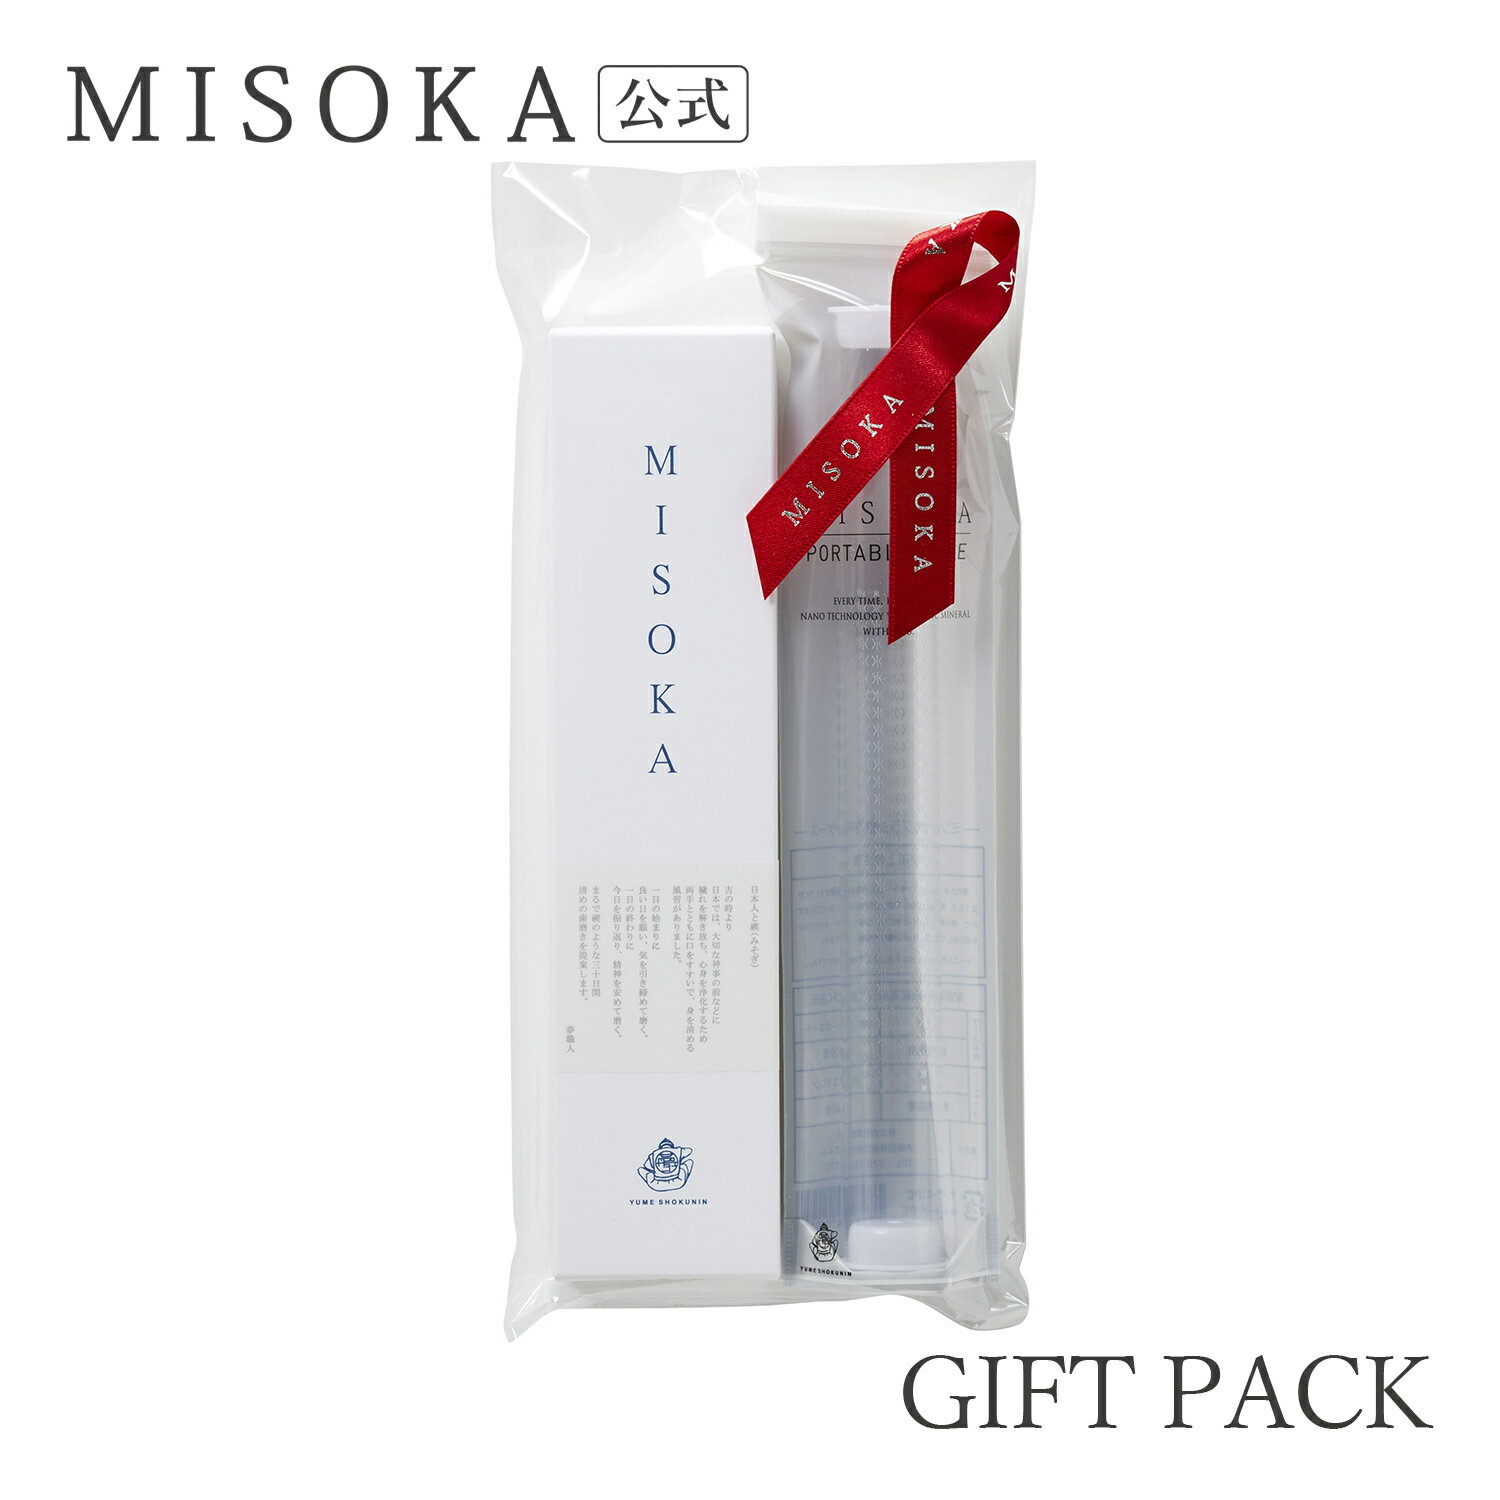 【MISOKAギフト】 歯ブラシ MISOKA基本の歯ブラシと携帯ケースのセット 1760円 【MISOKA公式】 日本製 【B-P】